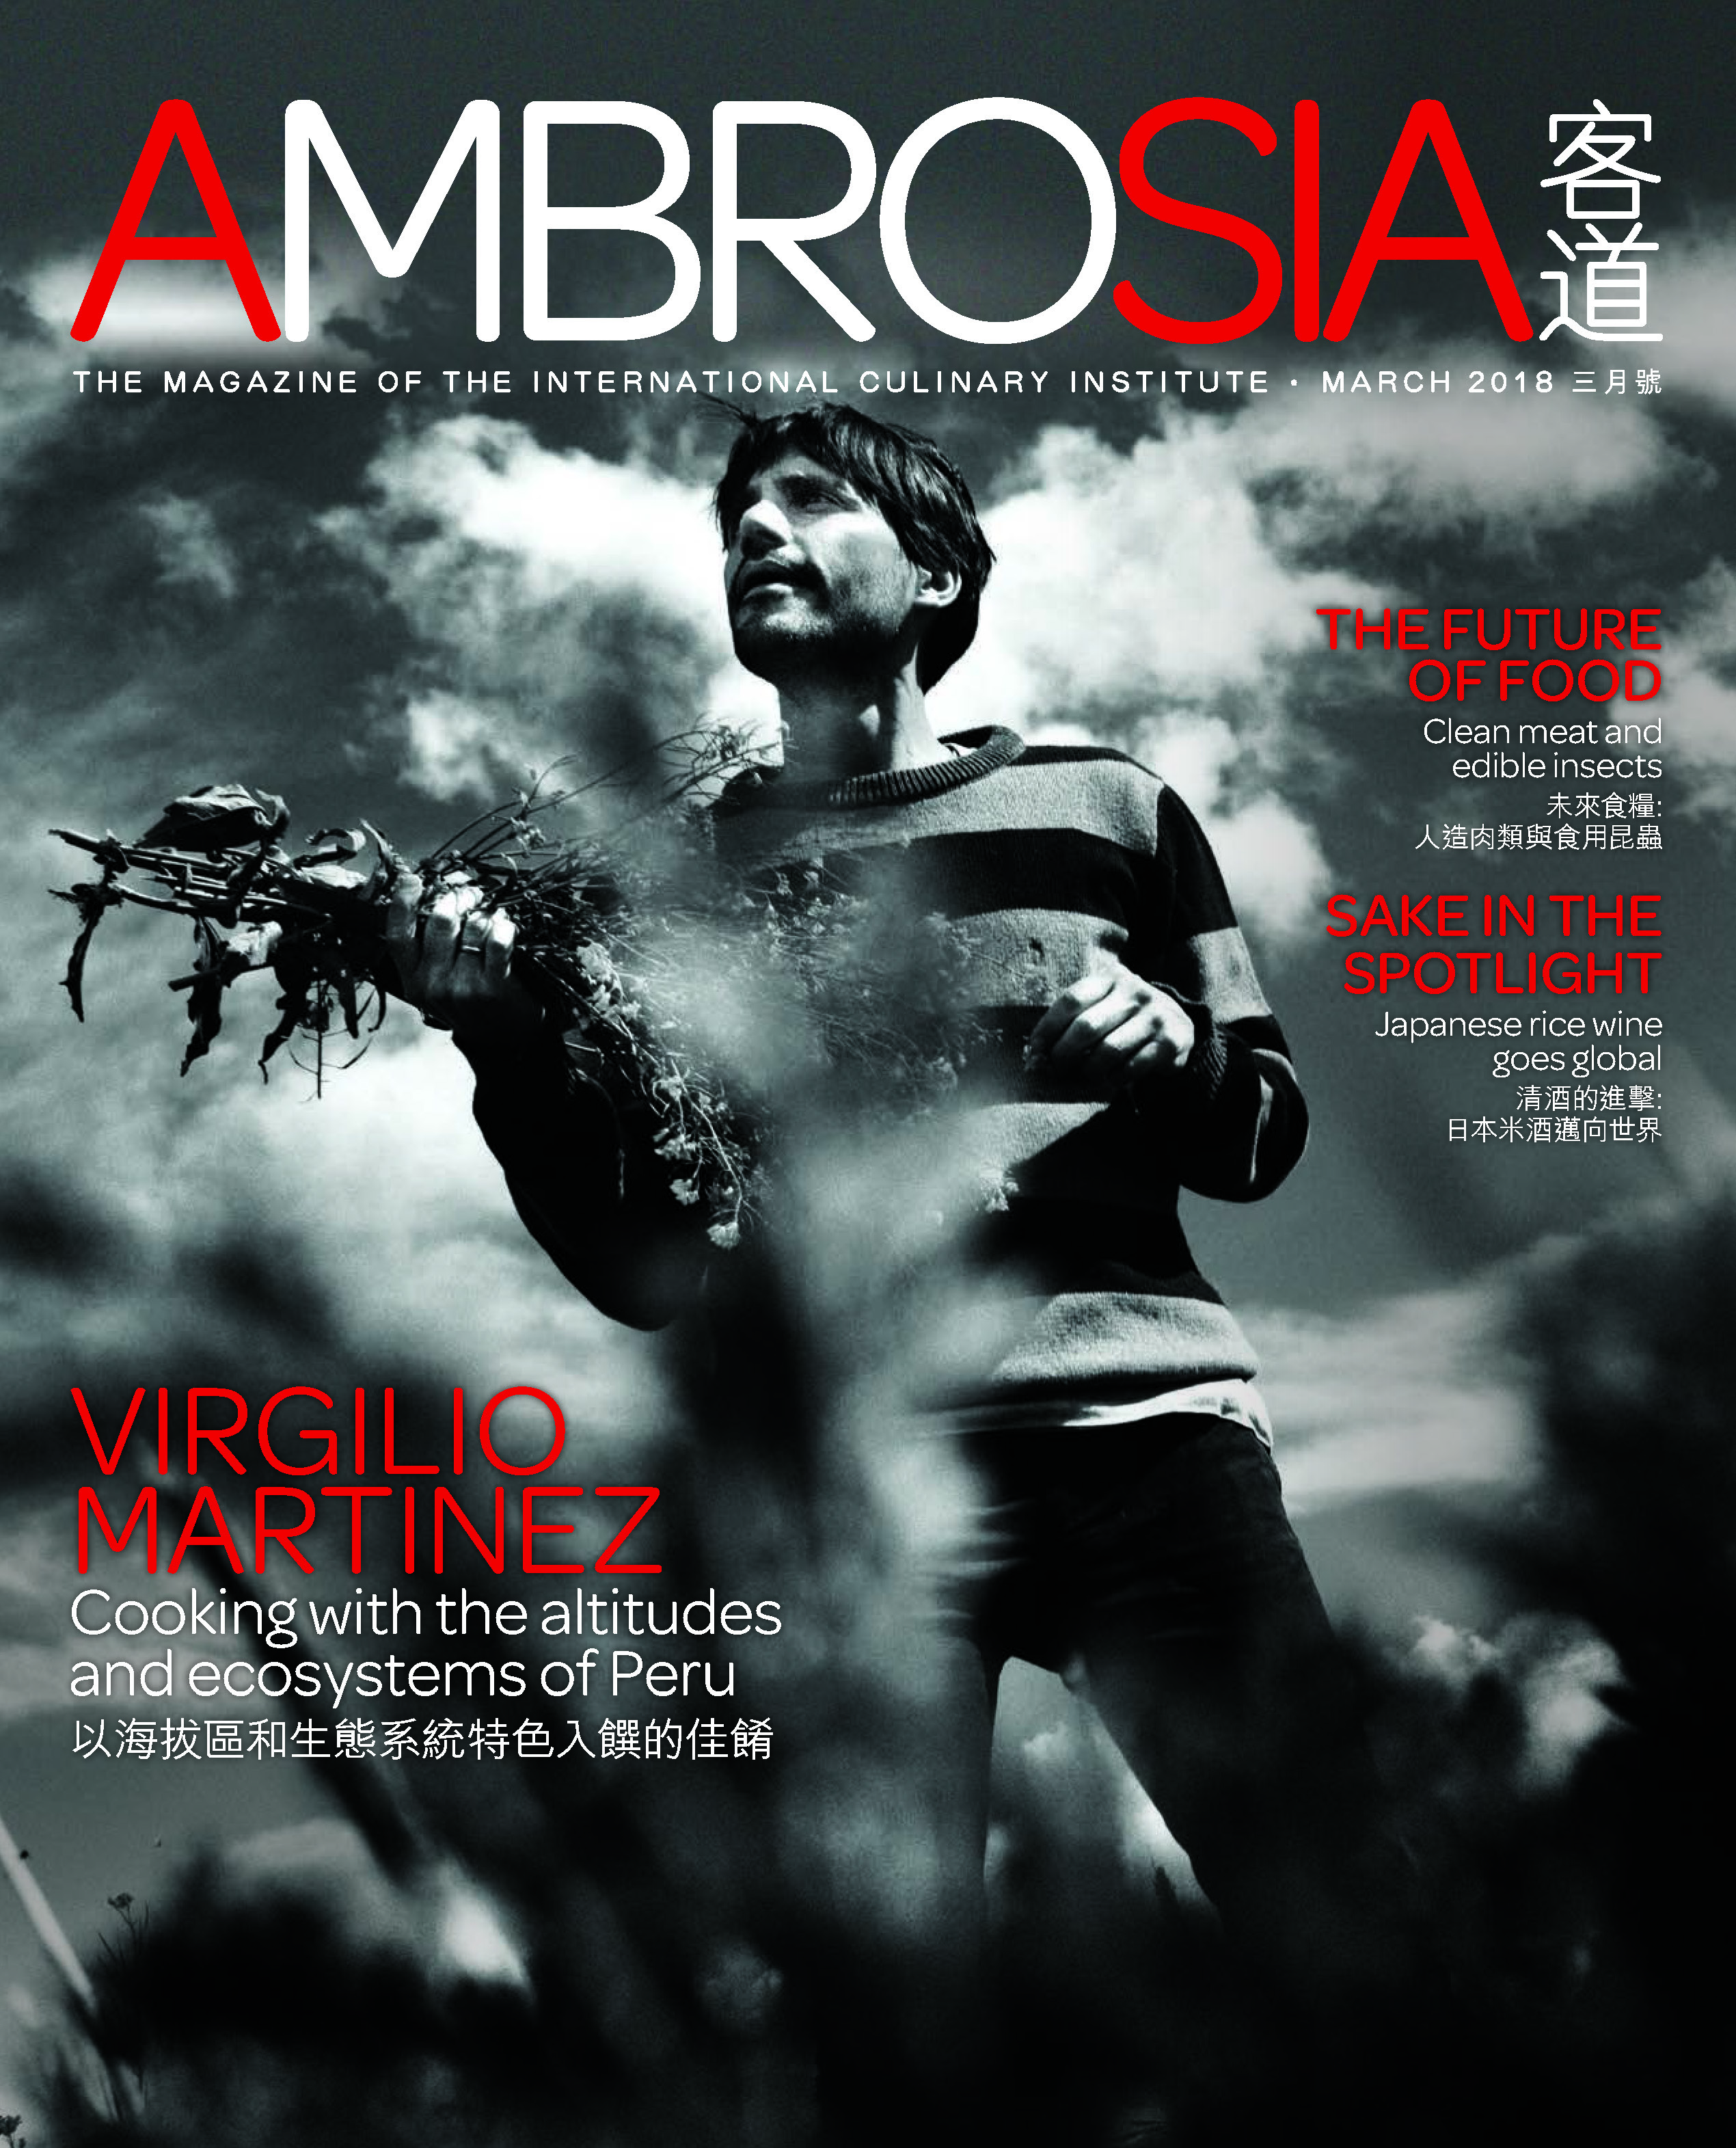 AMBROSIA (March 2018 issue)